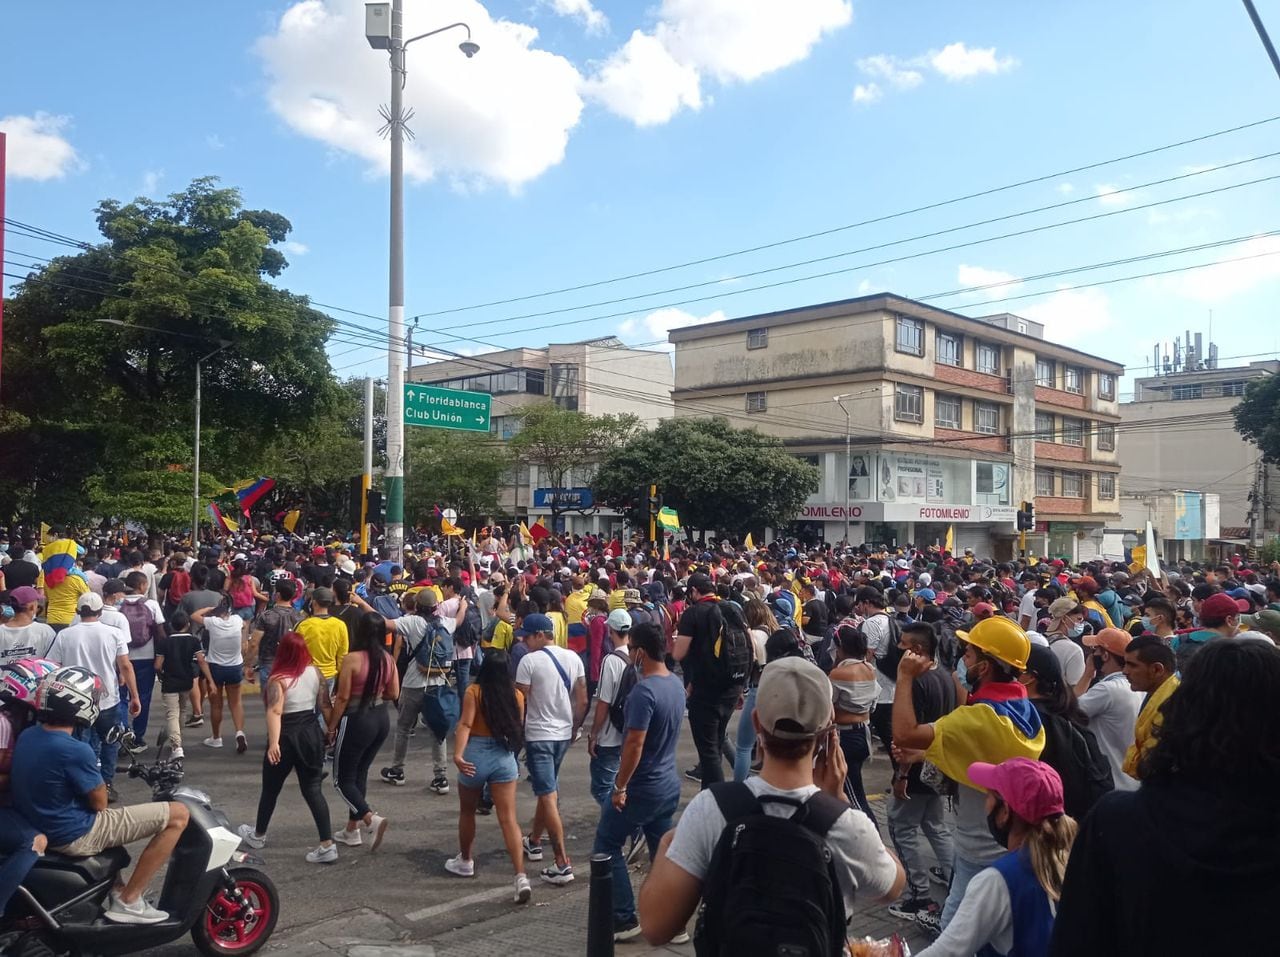 La marcha que partió desde el parque San Pío, se dirigió hacia el sur por la carrera 33. Esto afectó la movilidad en este sector de la ciudad.